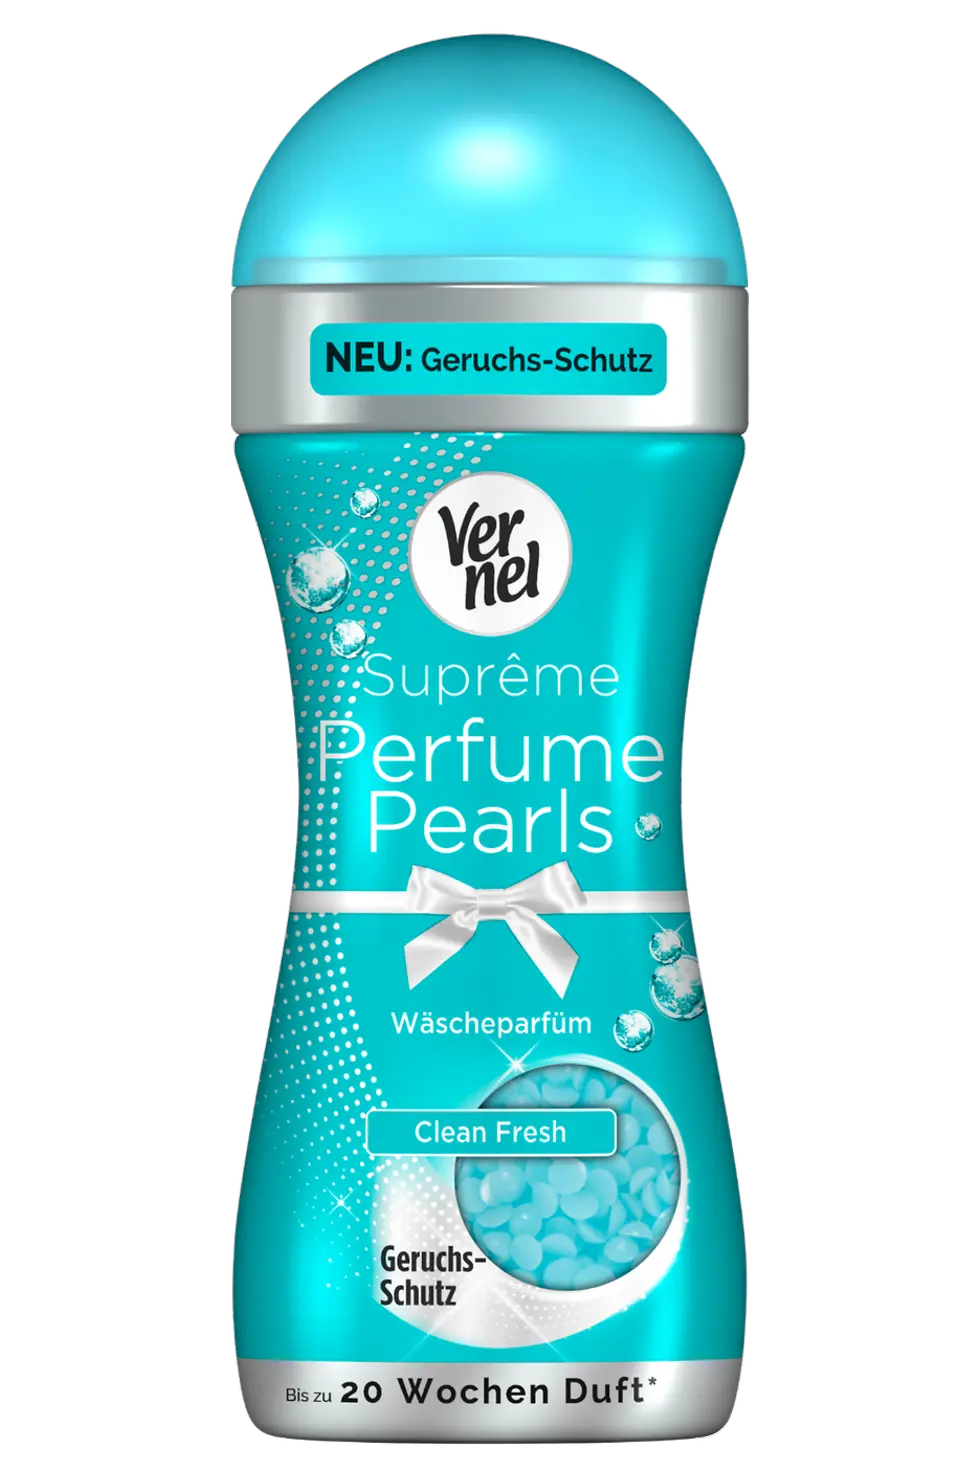 Die neuen Vernel Suprême Perfume Pearls Clean Fresh mit Geruchsschutz